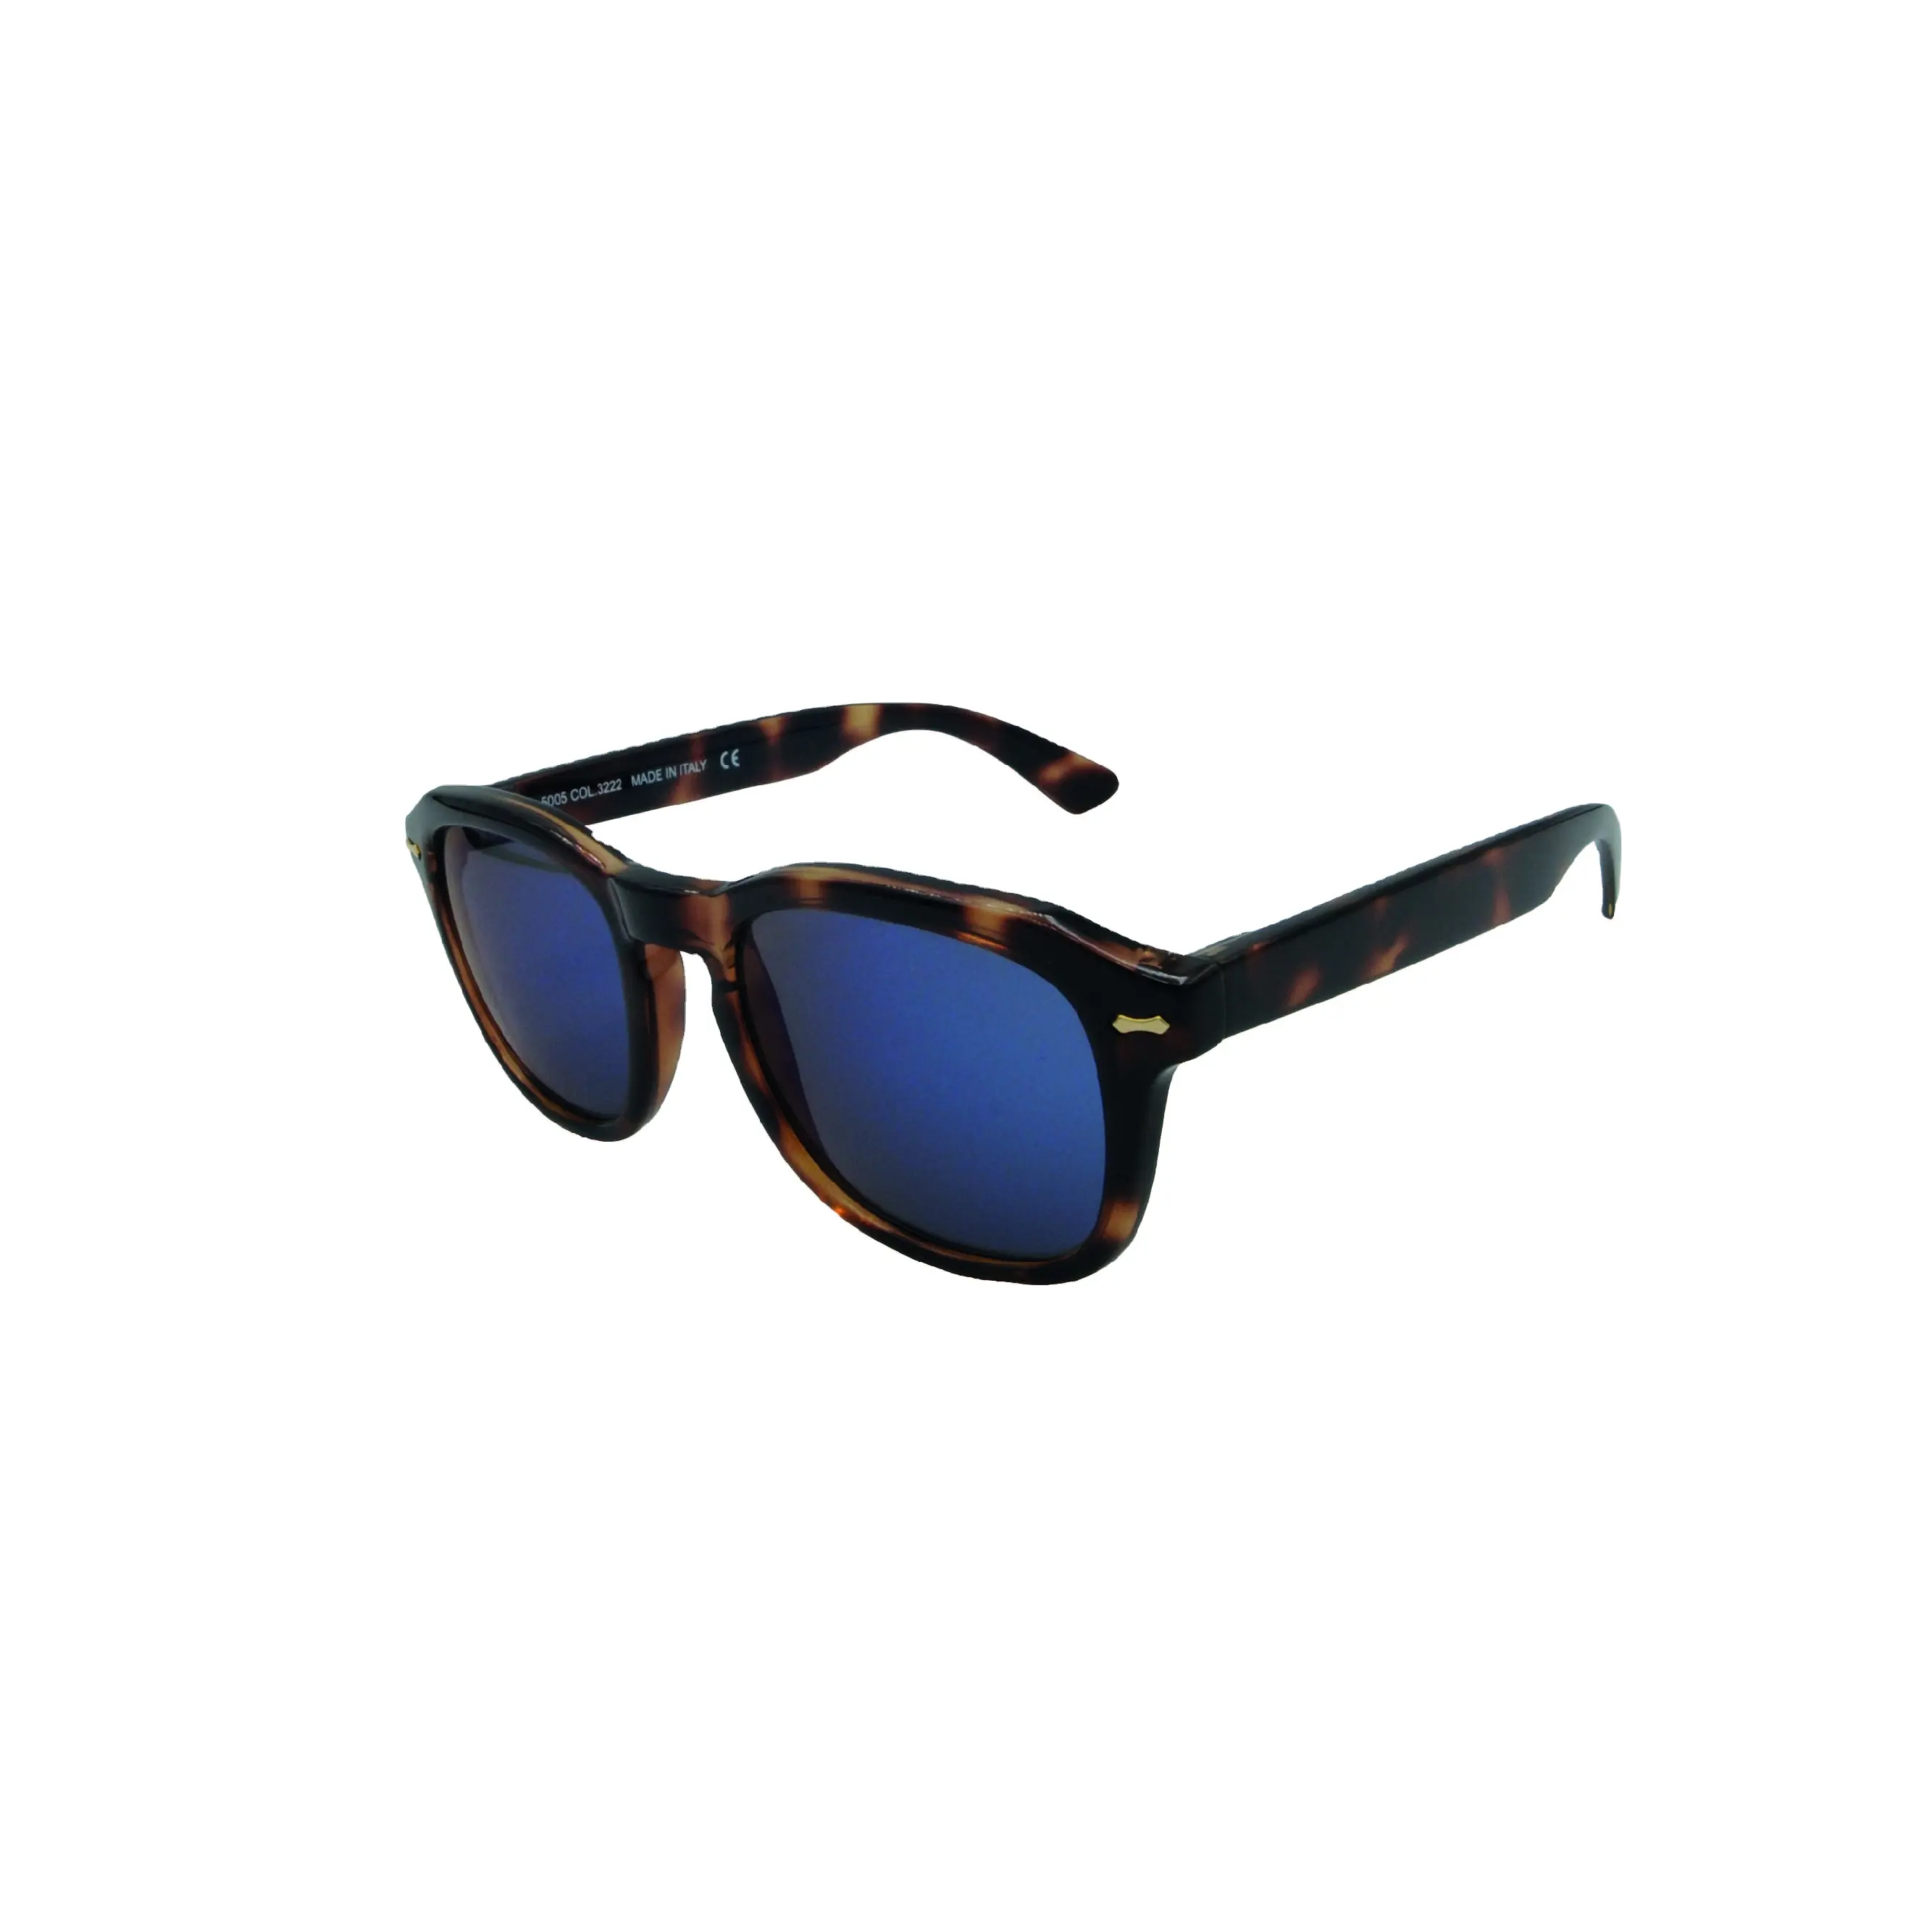 Modello "COLICO" Made in Italy montature iniettate e occhiali da sole con lenti UV400 Premium per uomo e donna